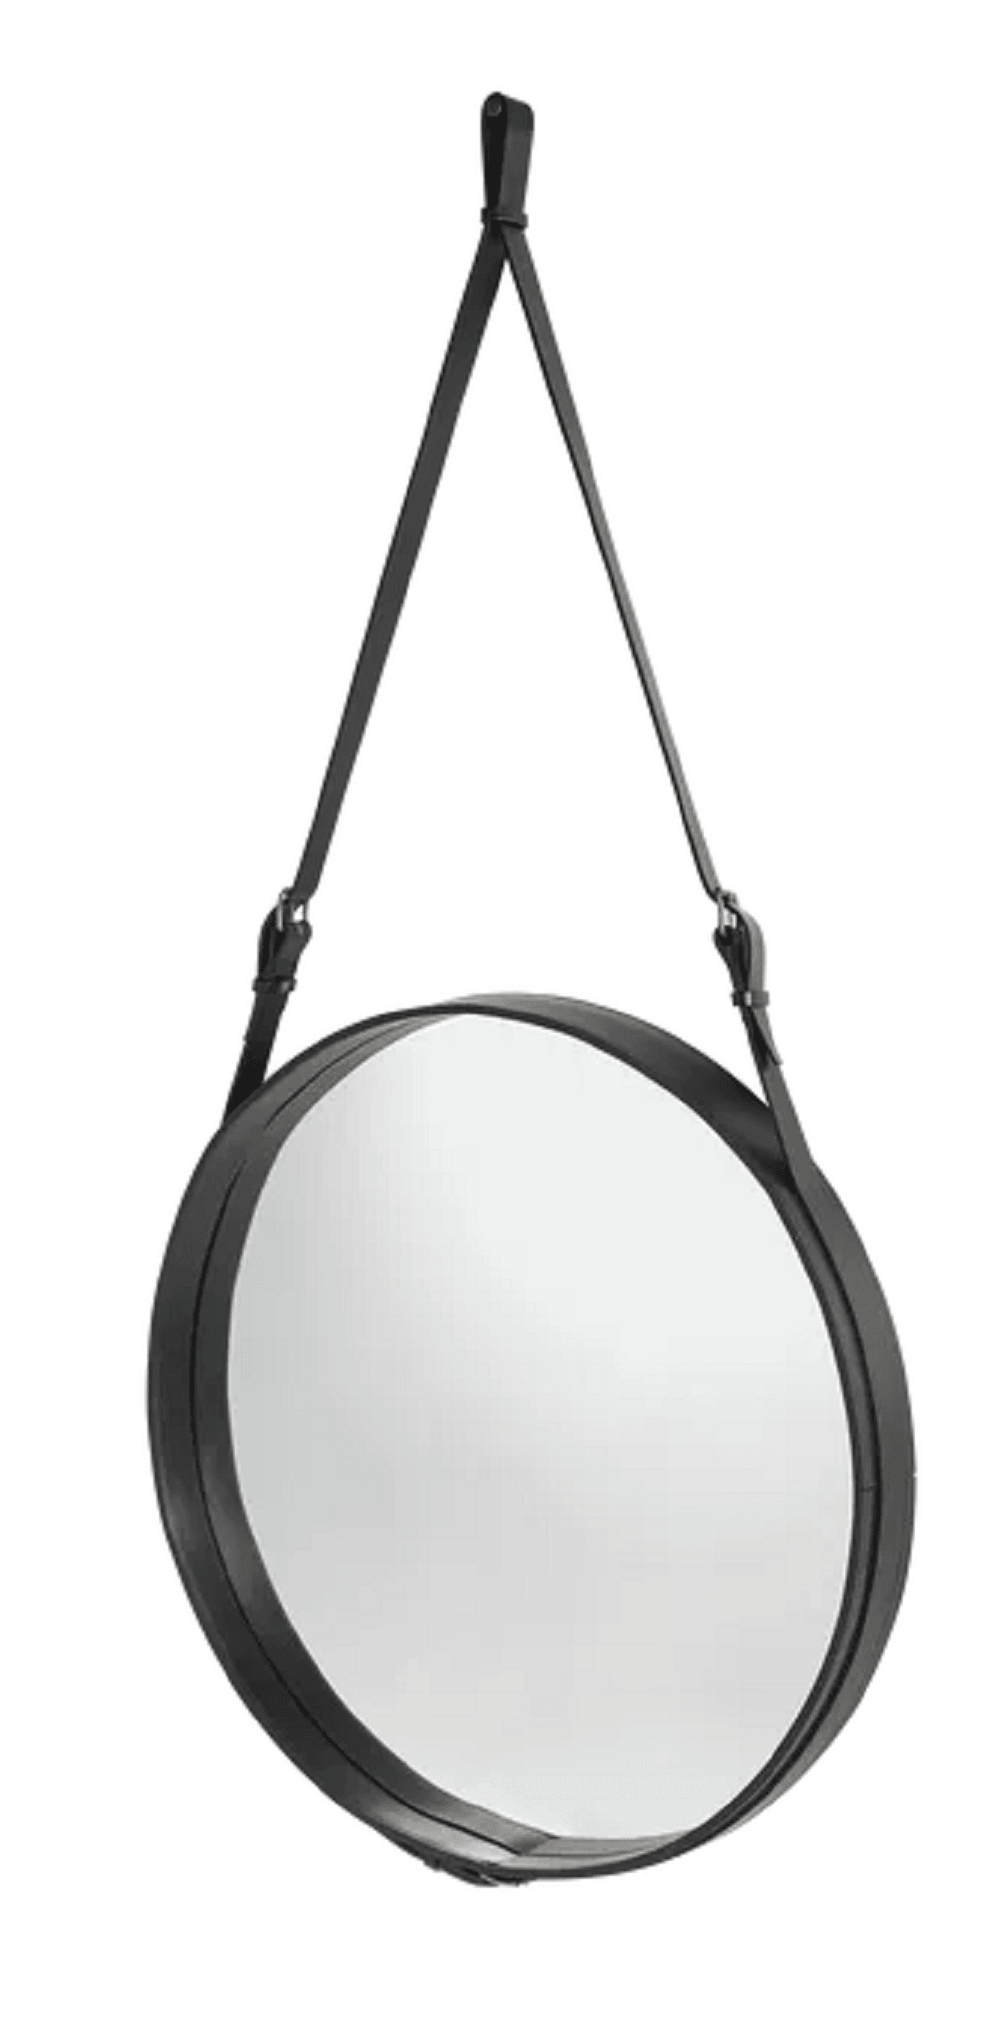 Gubi Adnet Spiegel Circulaire - runder Spiegel - Durchmesser 70 cm - Black Leather--7